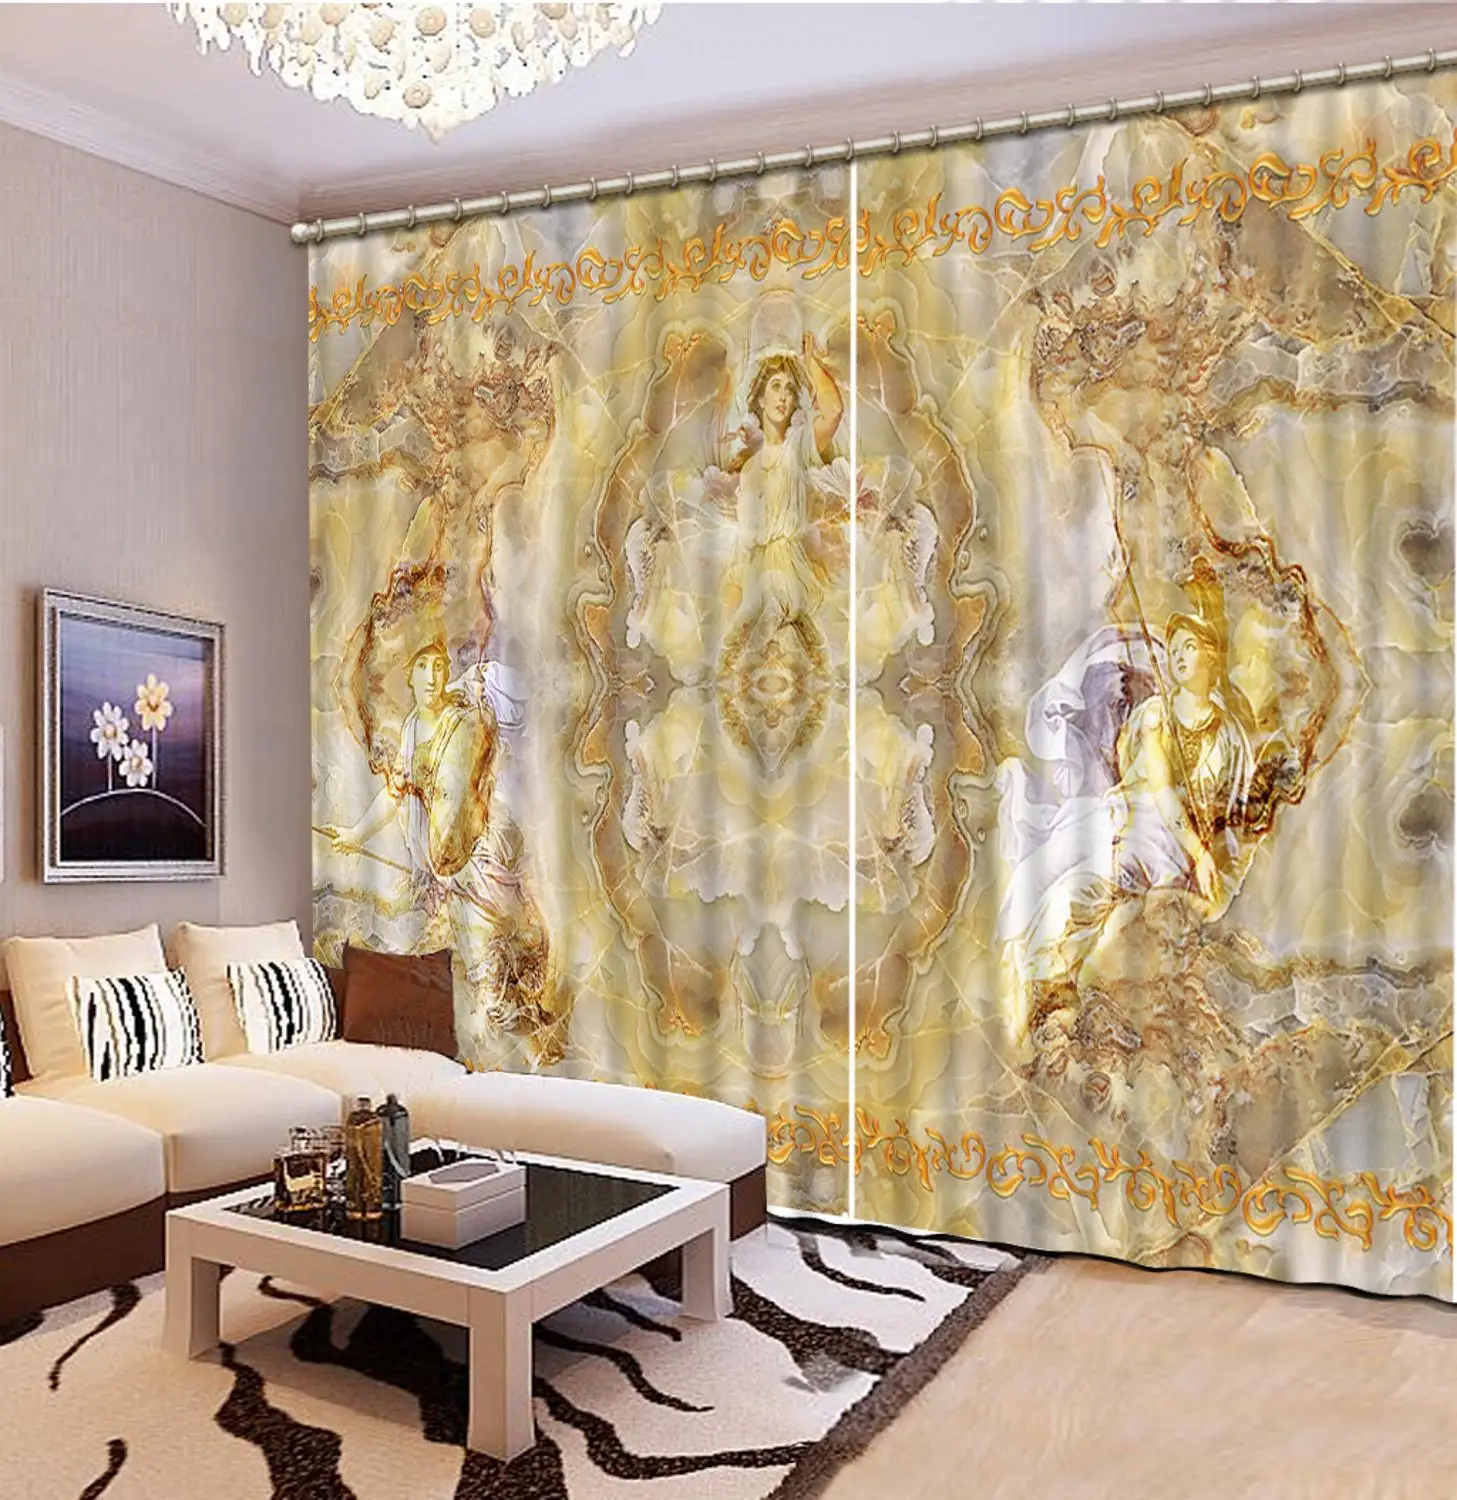 

Декоративная занавеска Европейская мраморная звукоизолированная занавеска для гостиной спальни любое окно настроить 3D шторы